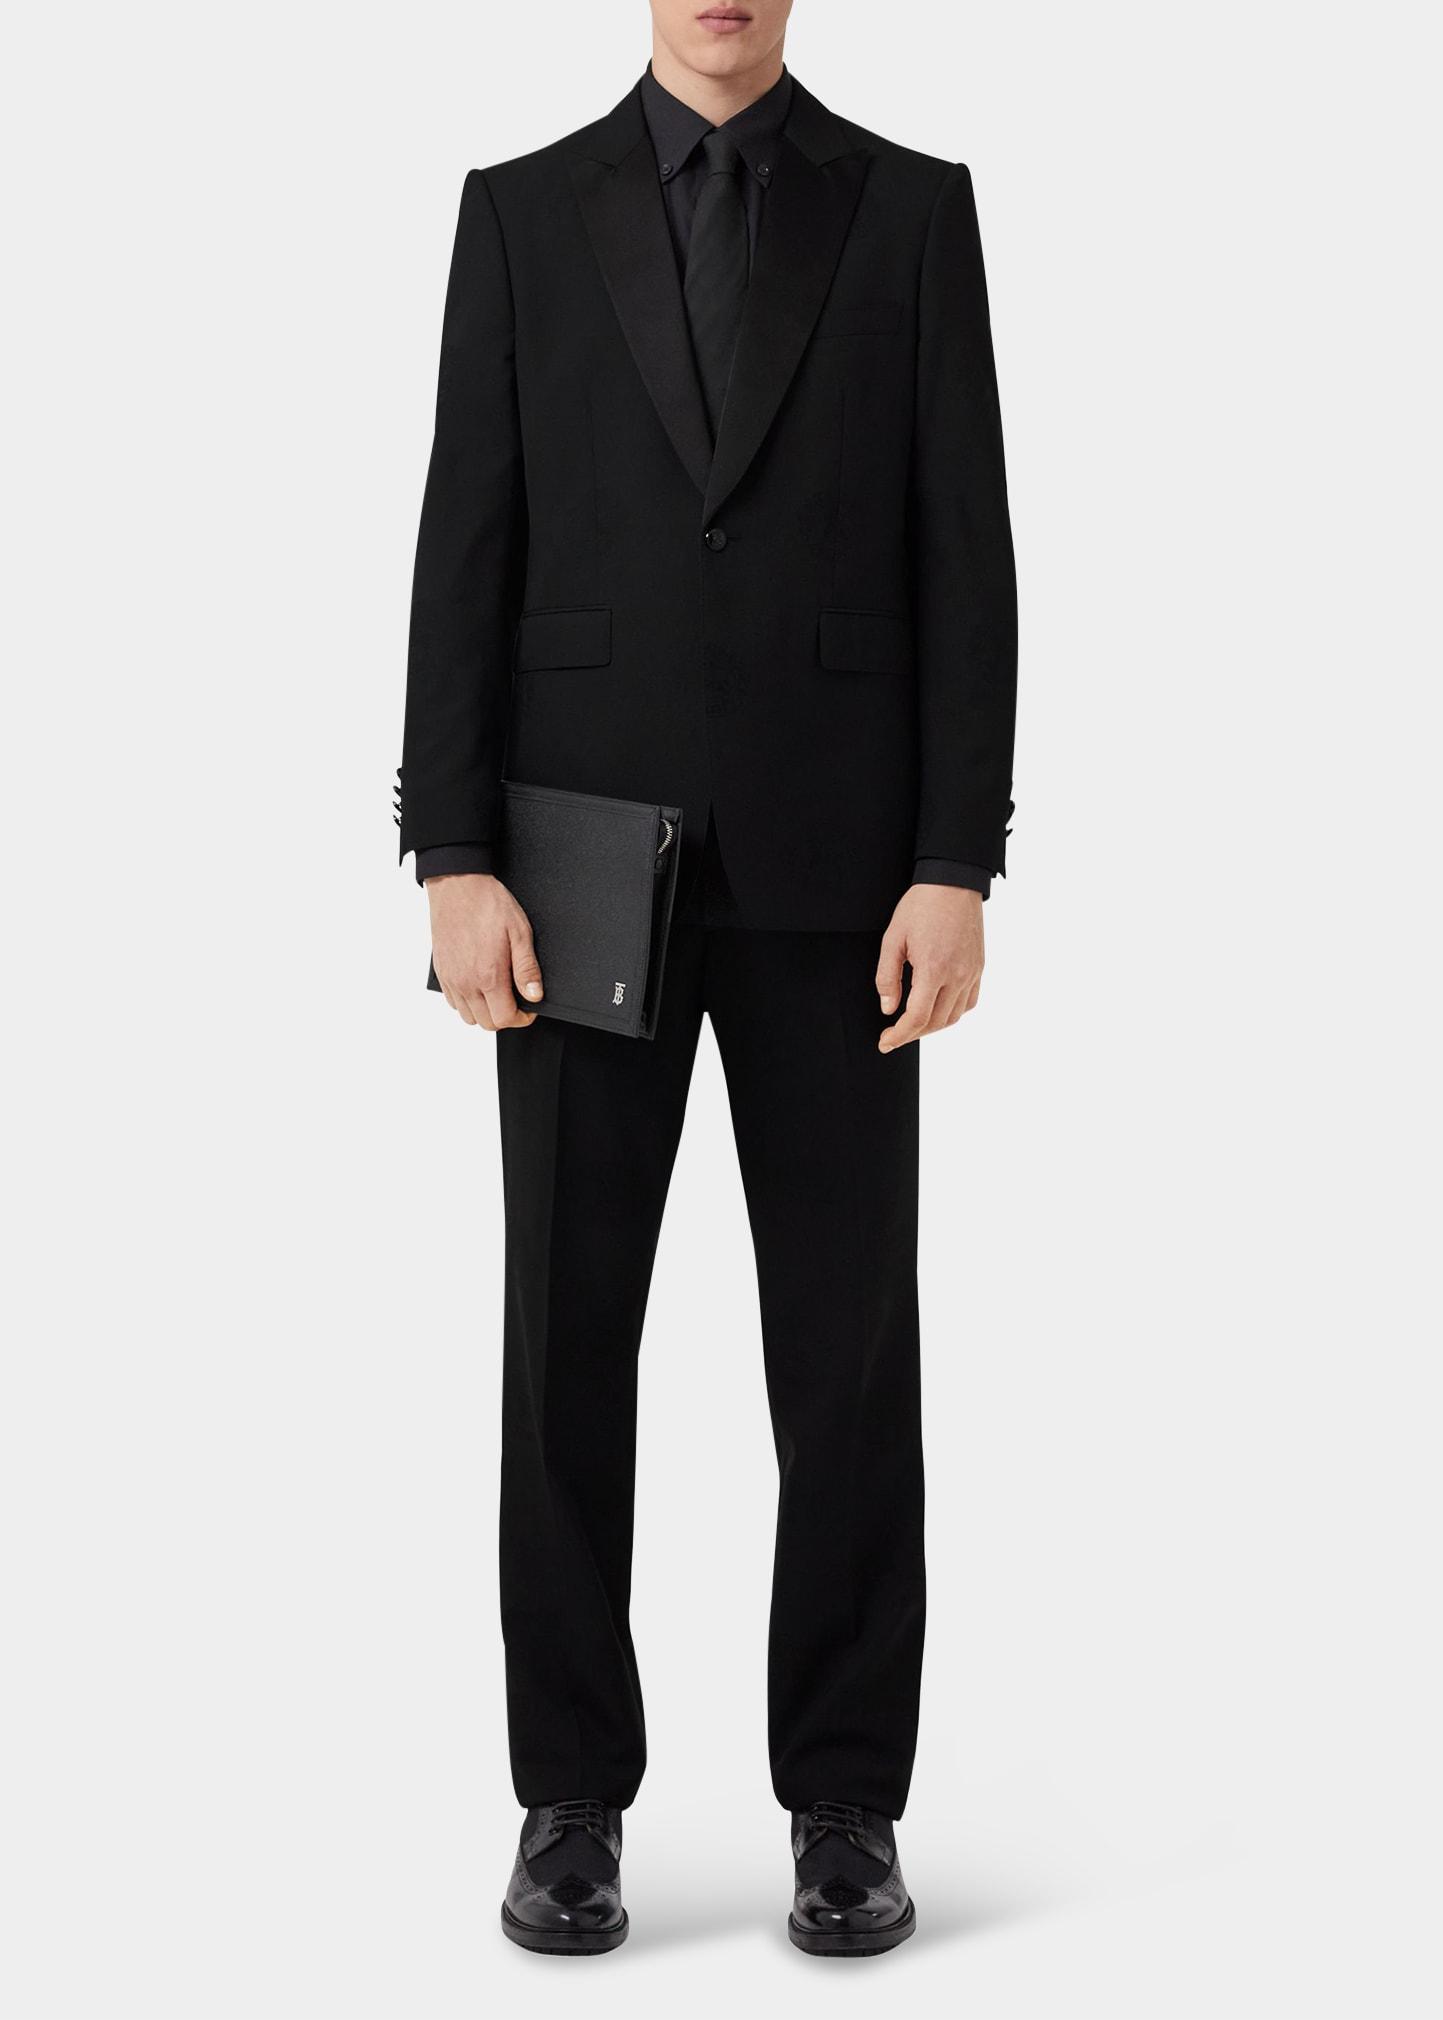 Burberry Edinburgh Ekd Jacquard Tuxedo Jacket in Black for Men | Lyst